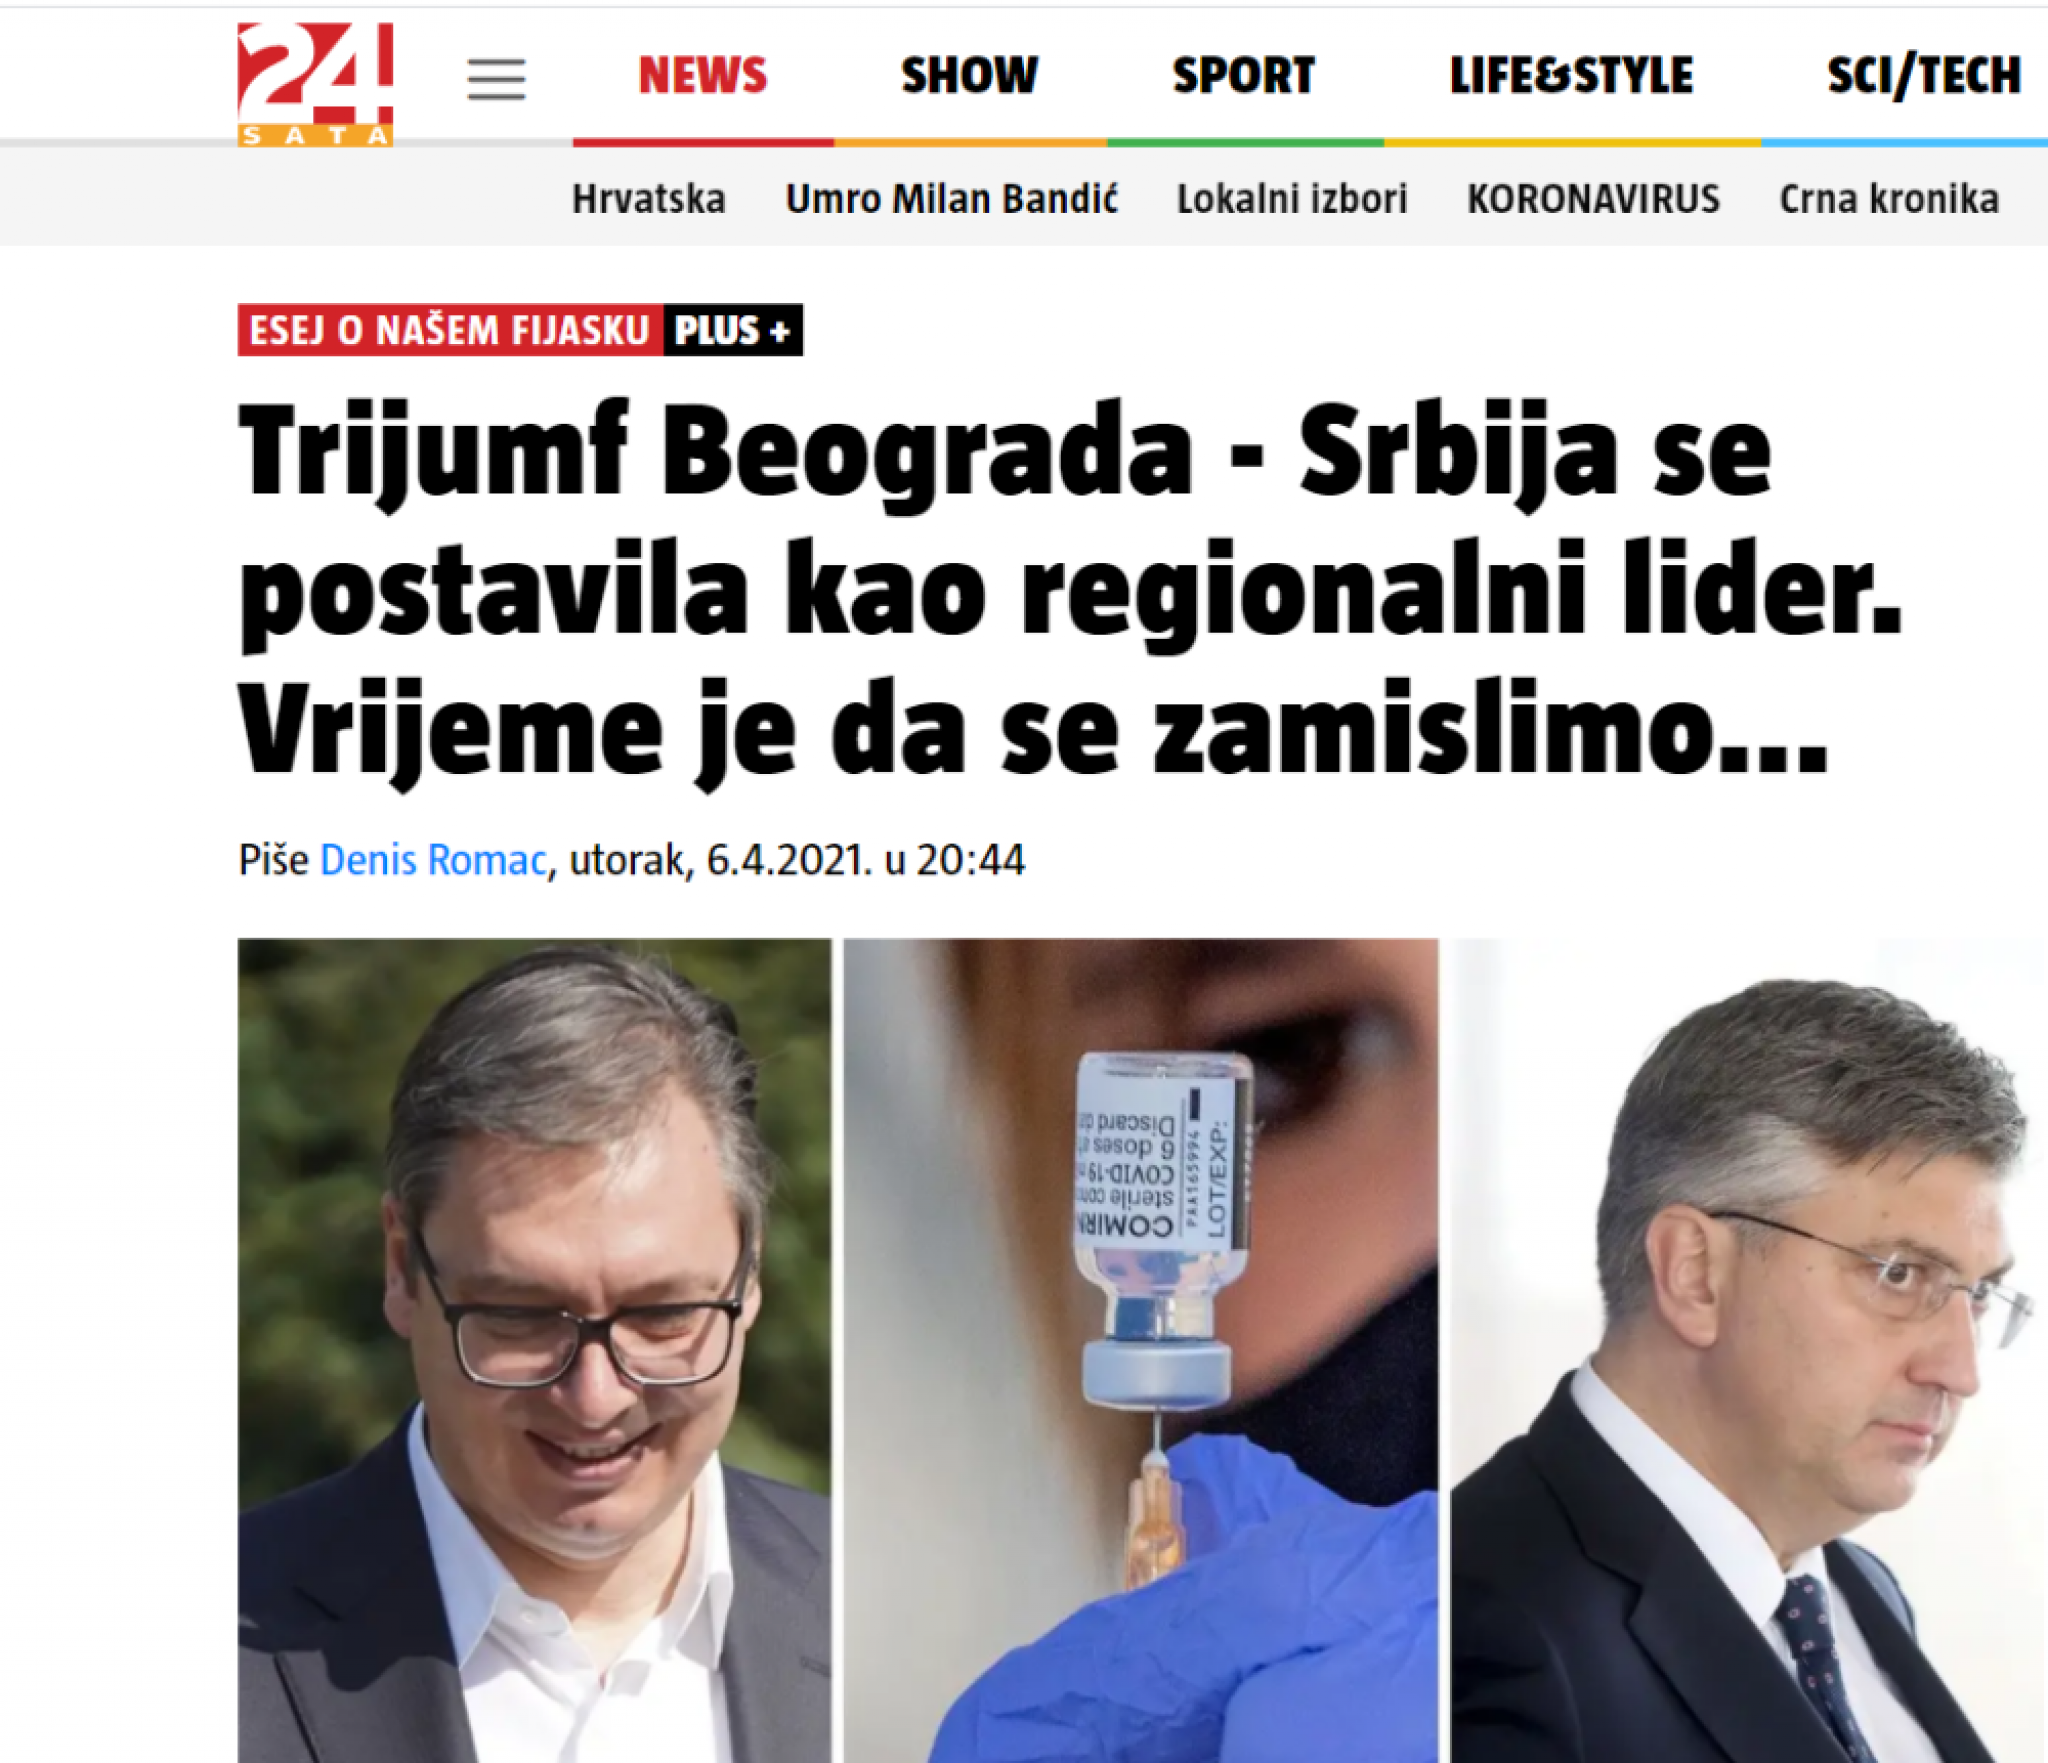 Hrvatski mediji